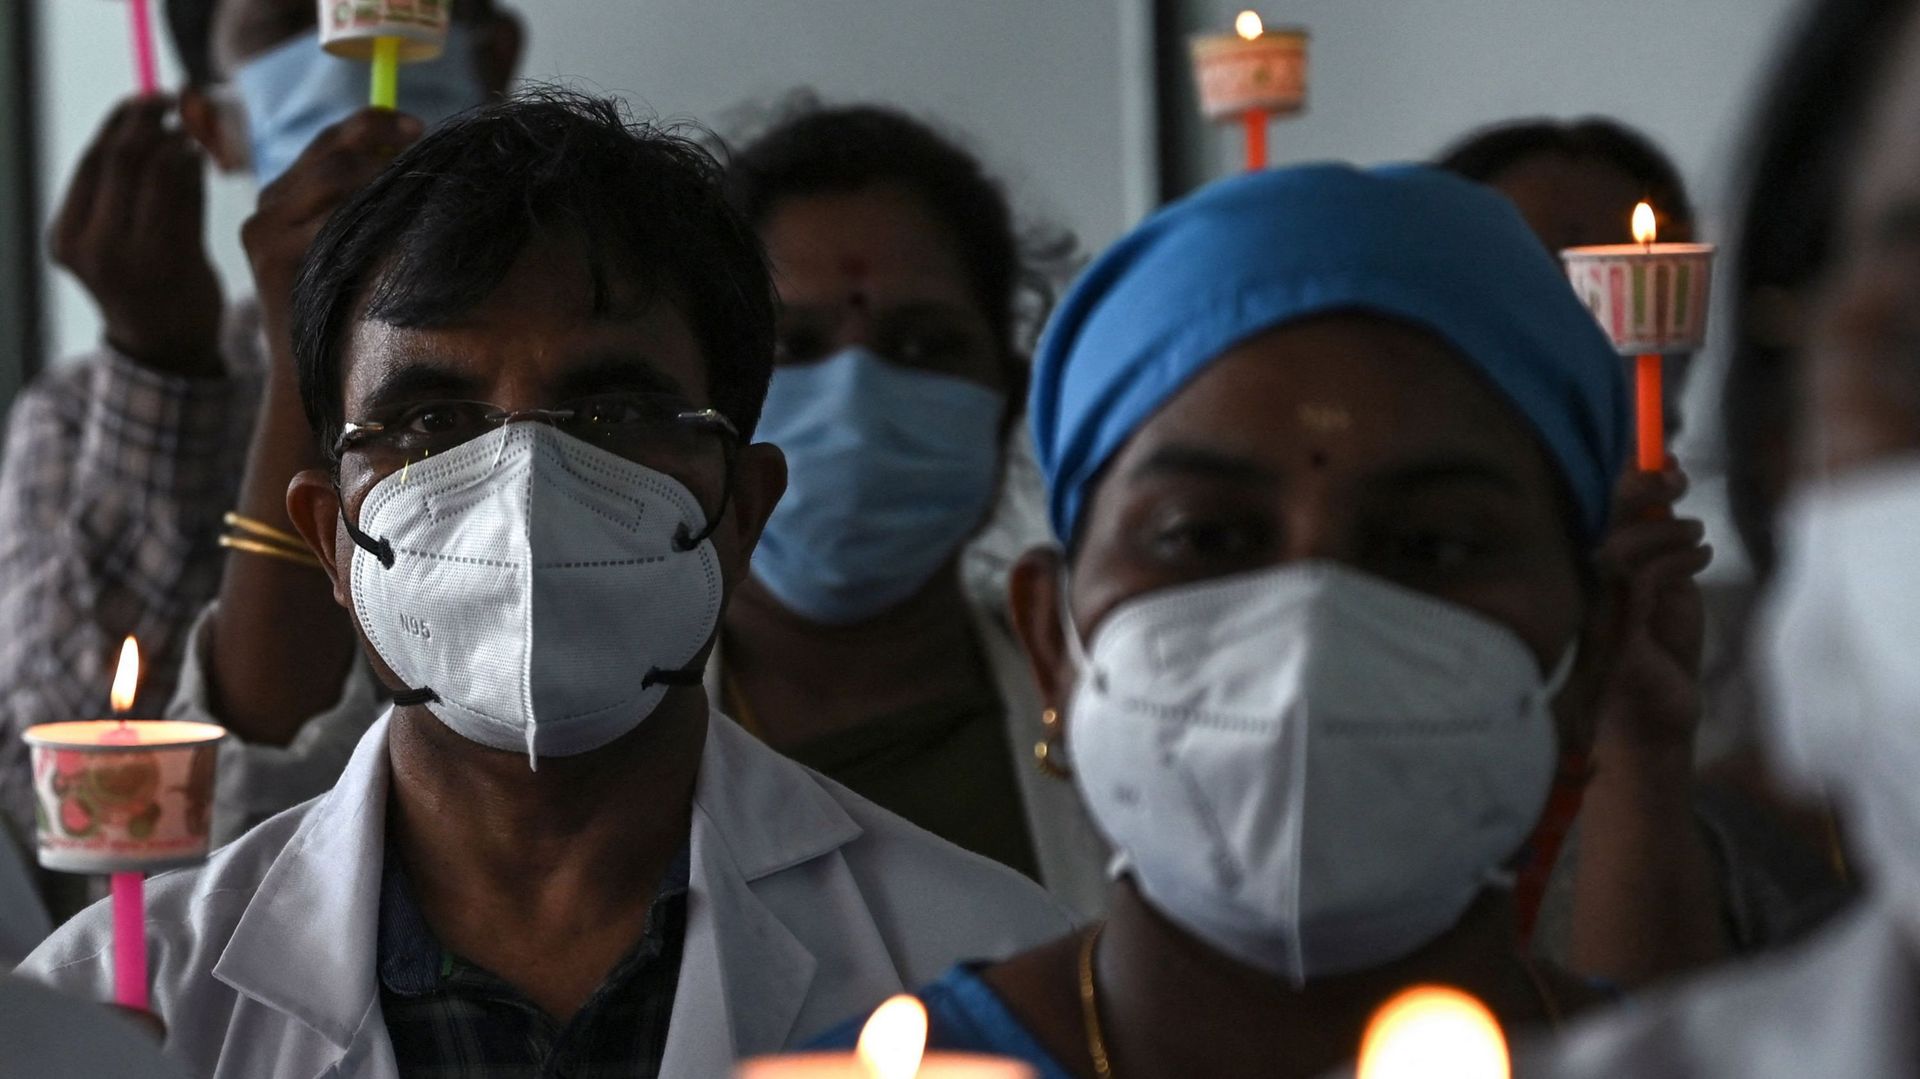 Des médecins procèdent à une veillée à la bougie en hommage aux médecins qui ont perdu la vie pendant la pandémie de coronavirus Covid-19, à l'occasion de la Journée nationale des médecins, à Chennai, le 1er juillet 2021